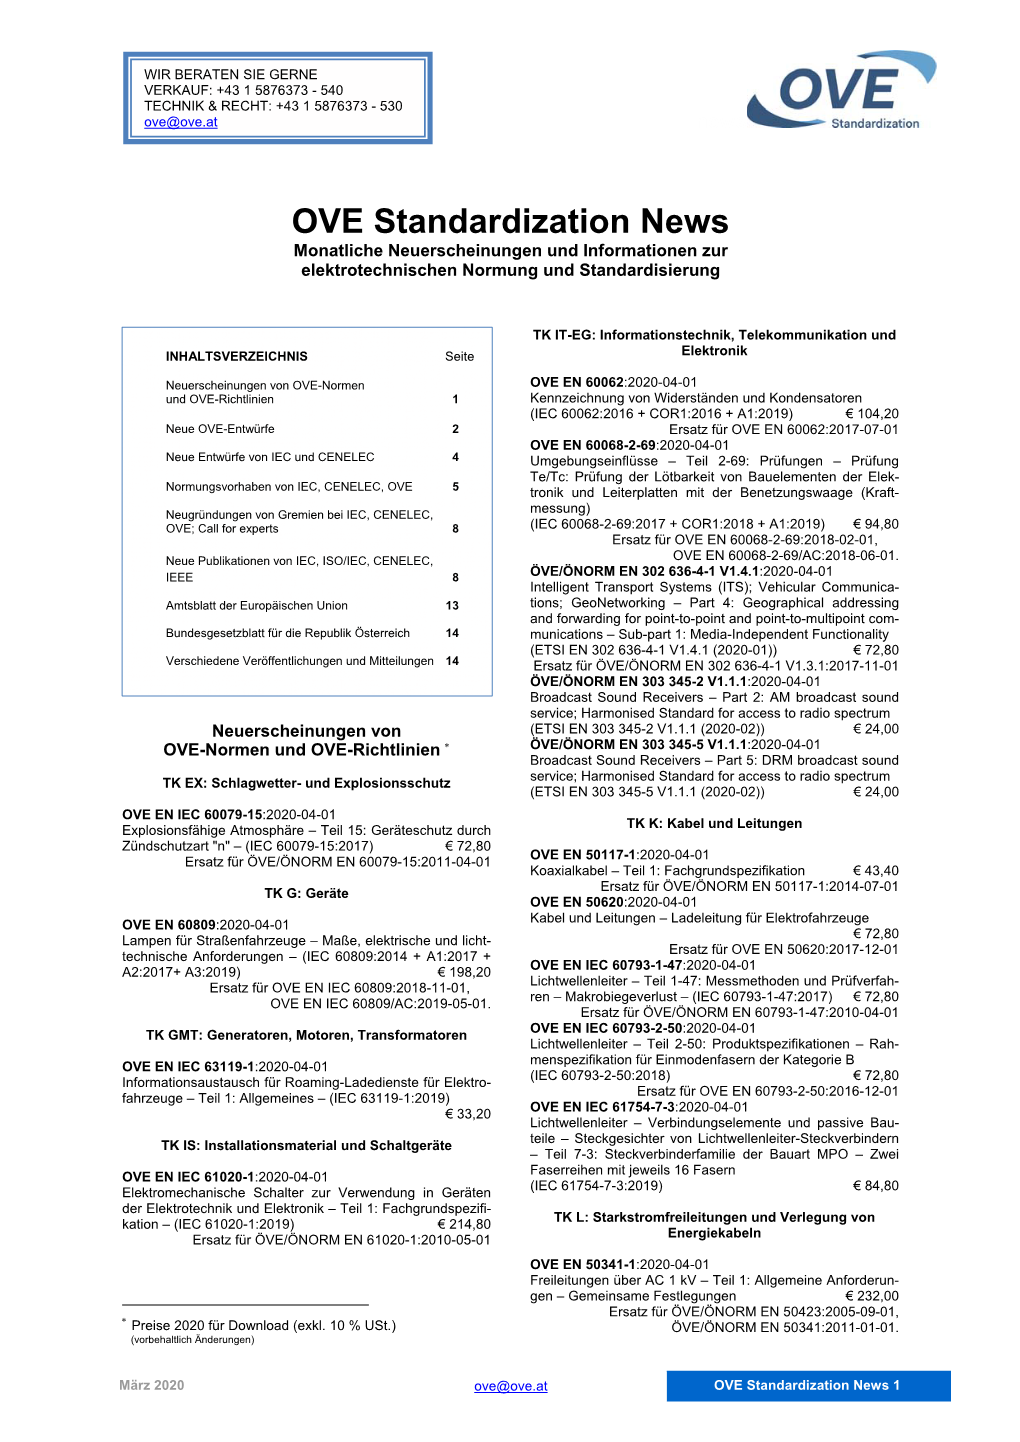 OVE Standardization News Monatliche Neuerscheinungen Und Informationen Zur Elektrotechnischen Normung Und Standardisierung